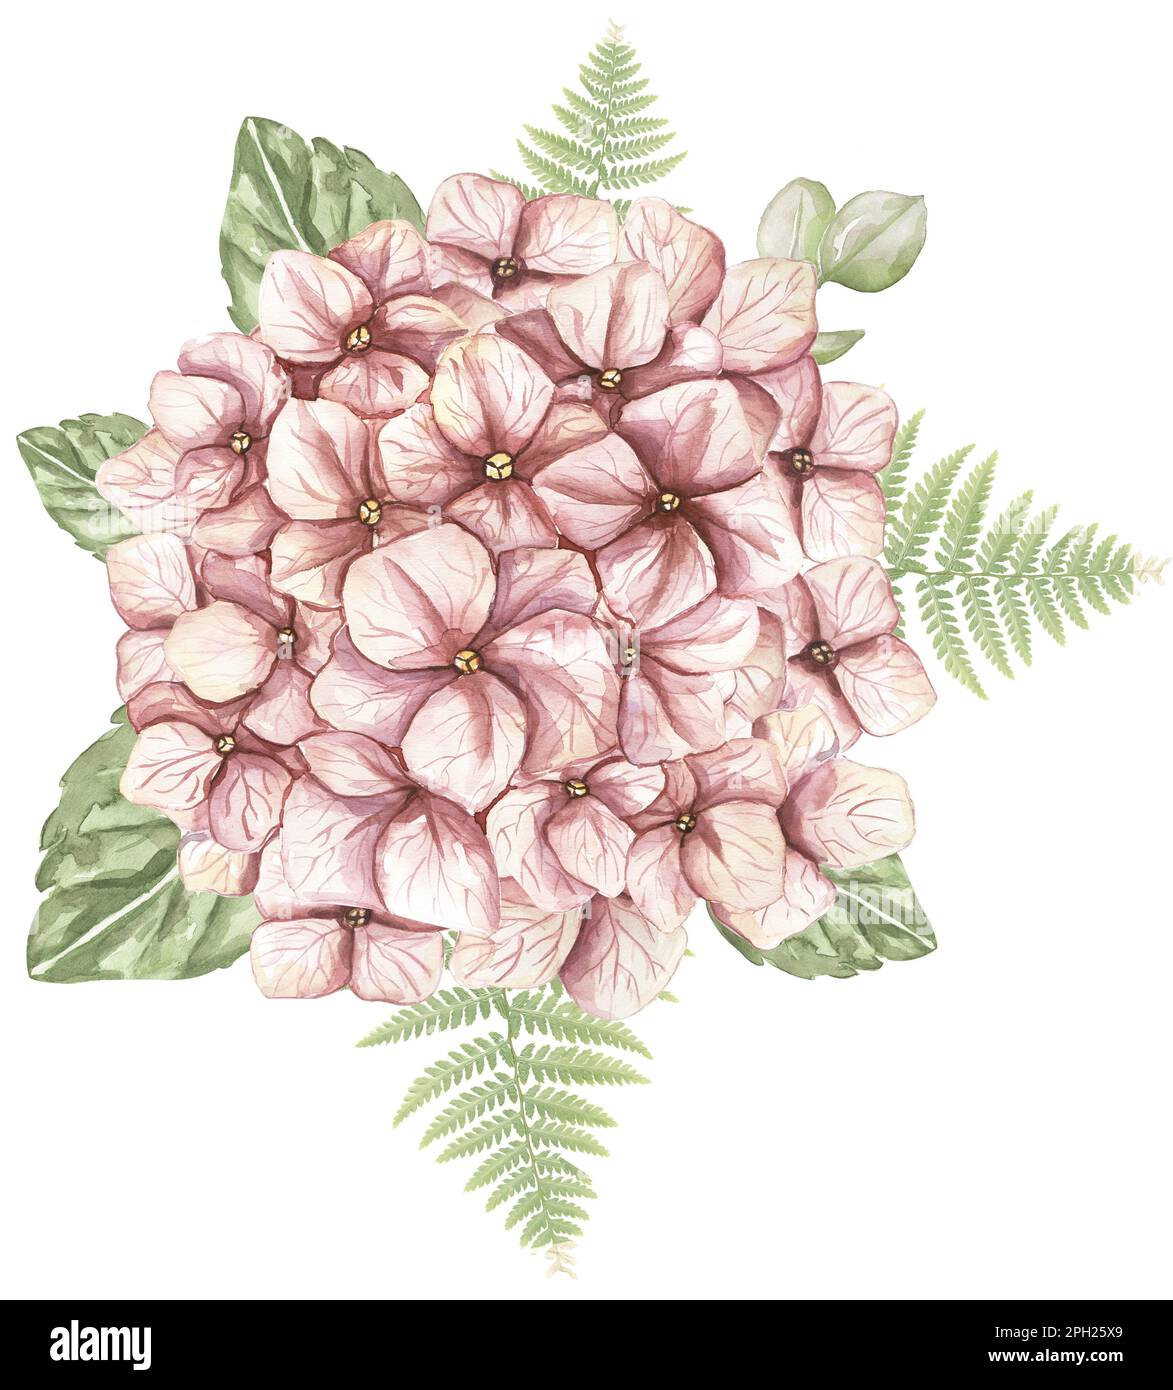 Fleurs d'hortensia rose aquarelle et bouquet de fougères. illustration des fleurs du jardin Banque D'Images